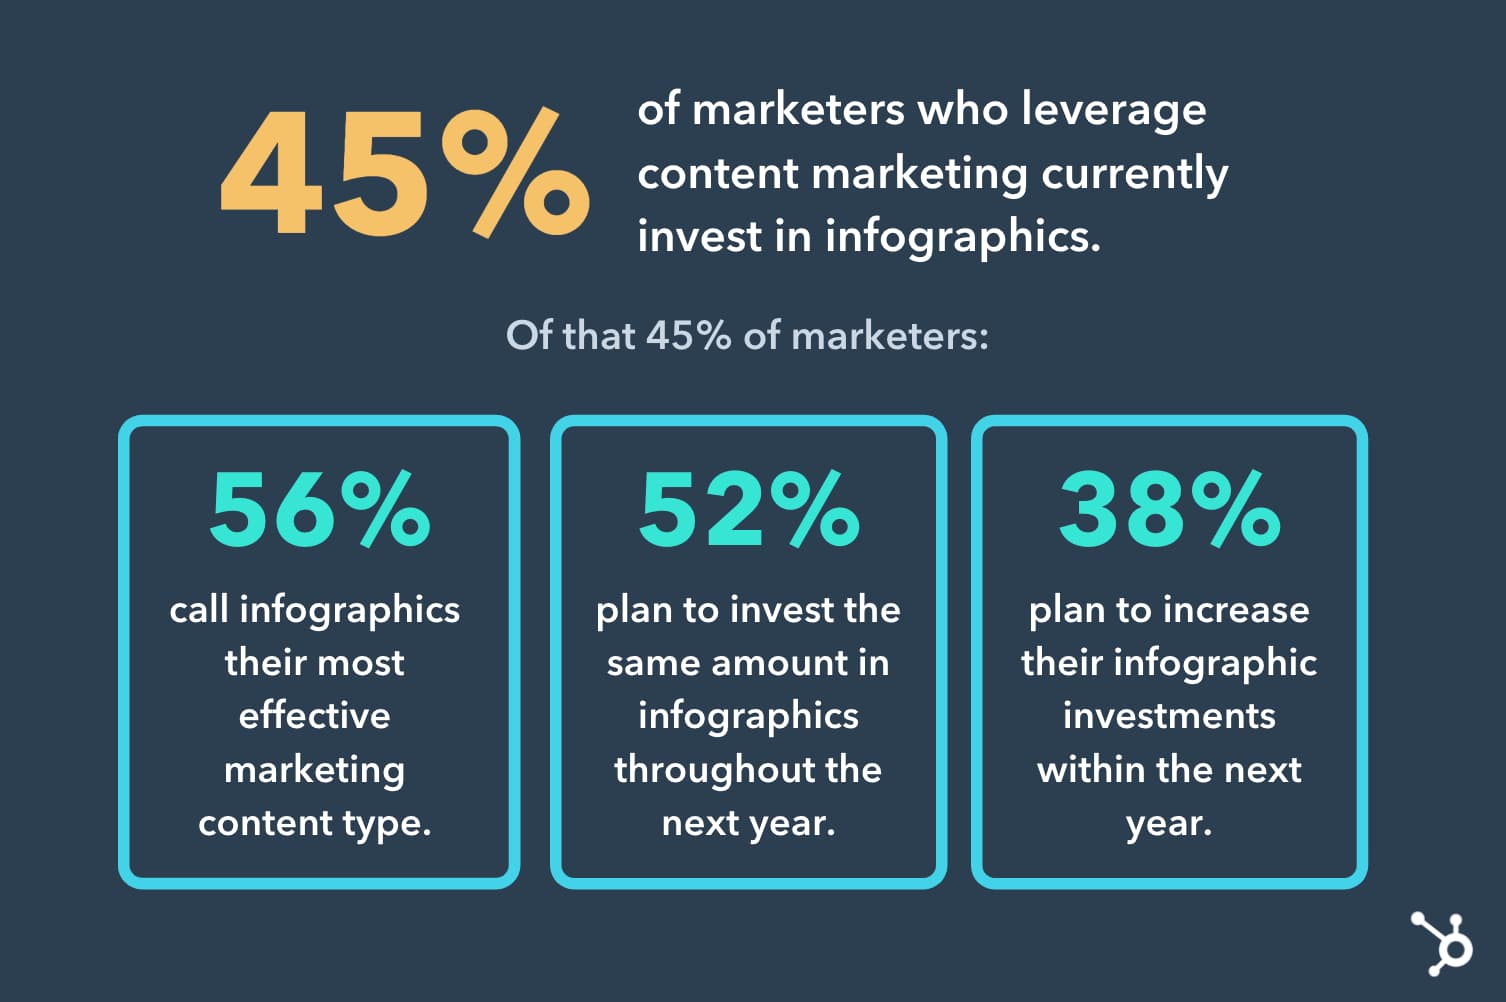 una infografía que destaca las estadísticas de tendencias de marketing infográfico